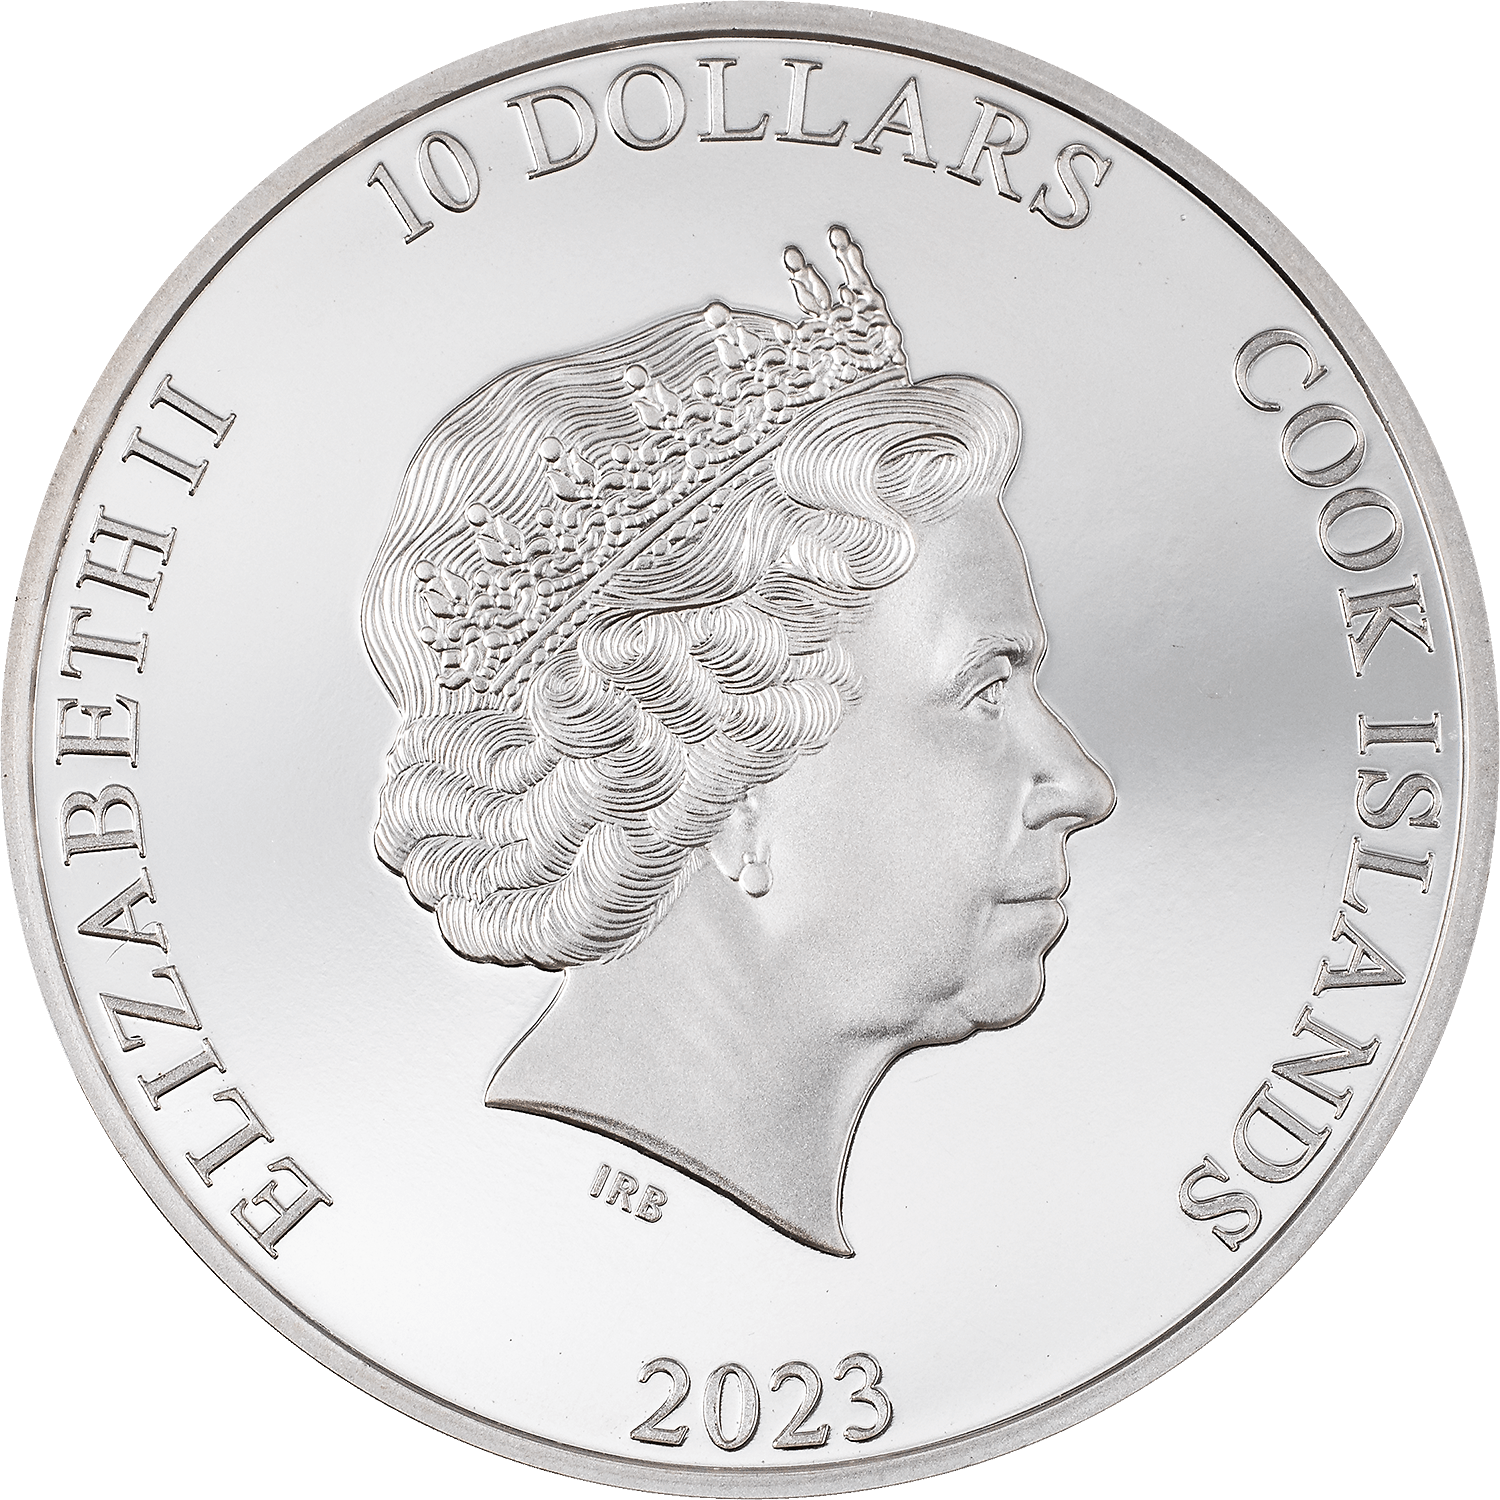 HALF DOME Mountains 2 Oz Silver Coin $10 Cook Islands 2023 - PARTHAVA COIN